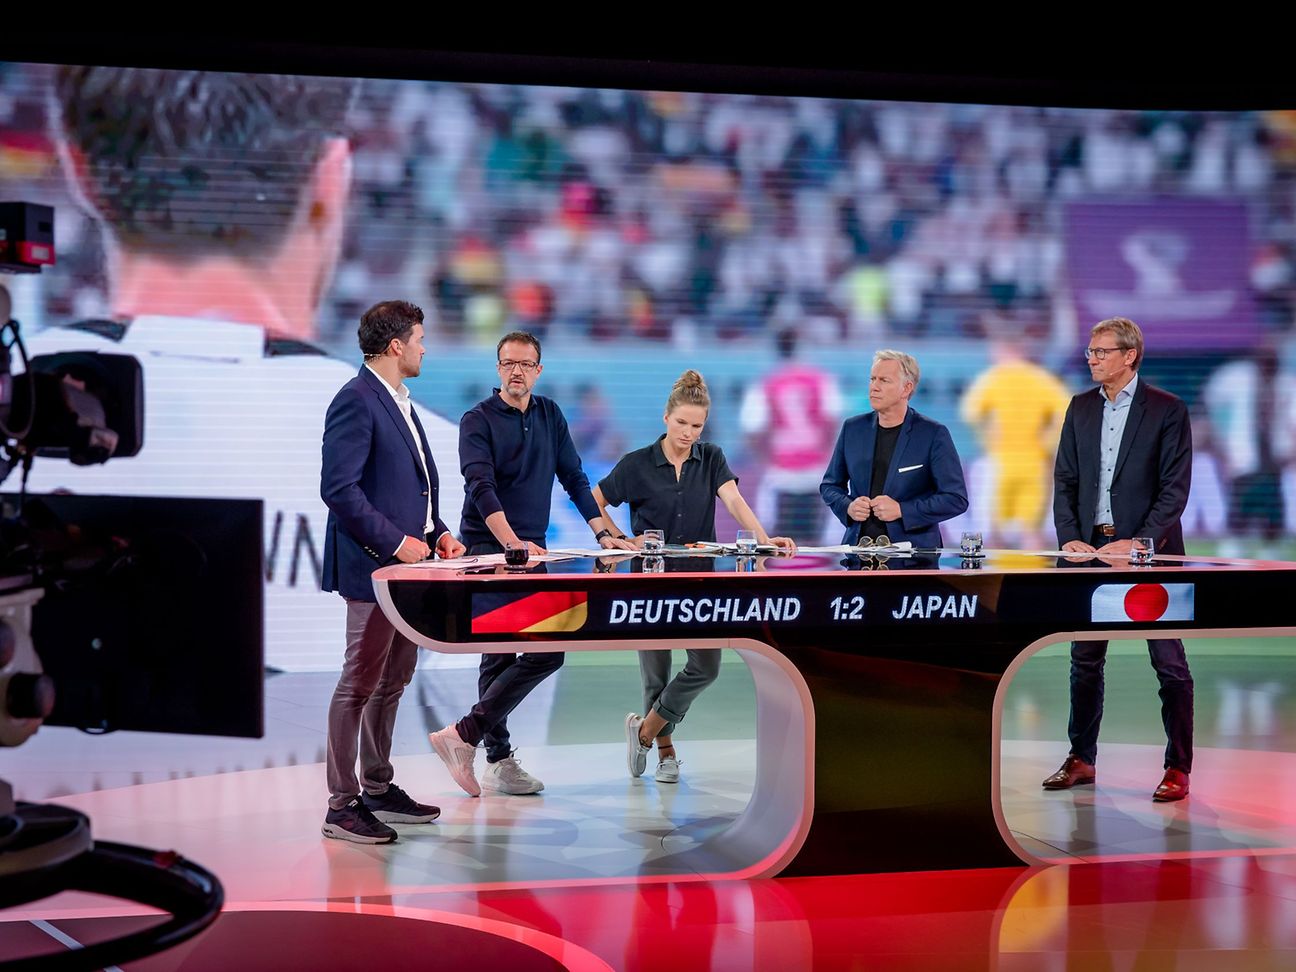 Telekom zieht Bilanz der FIFA WM 2022 bei MagentaTV Innovative Ansätze, kritische Berichterstattung und großes Interesse über alle Zielgruppen hinweg Deutsche Telekom